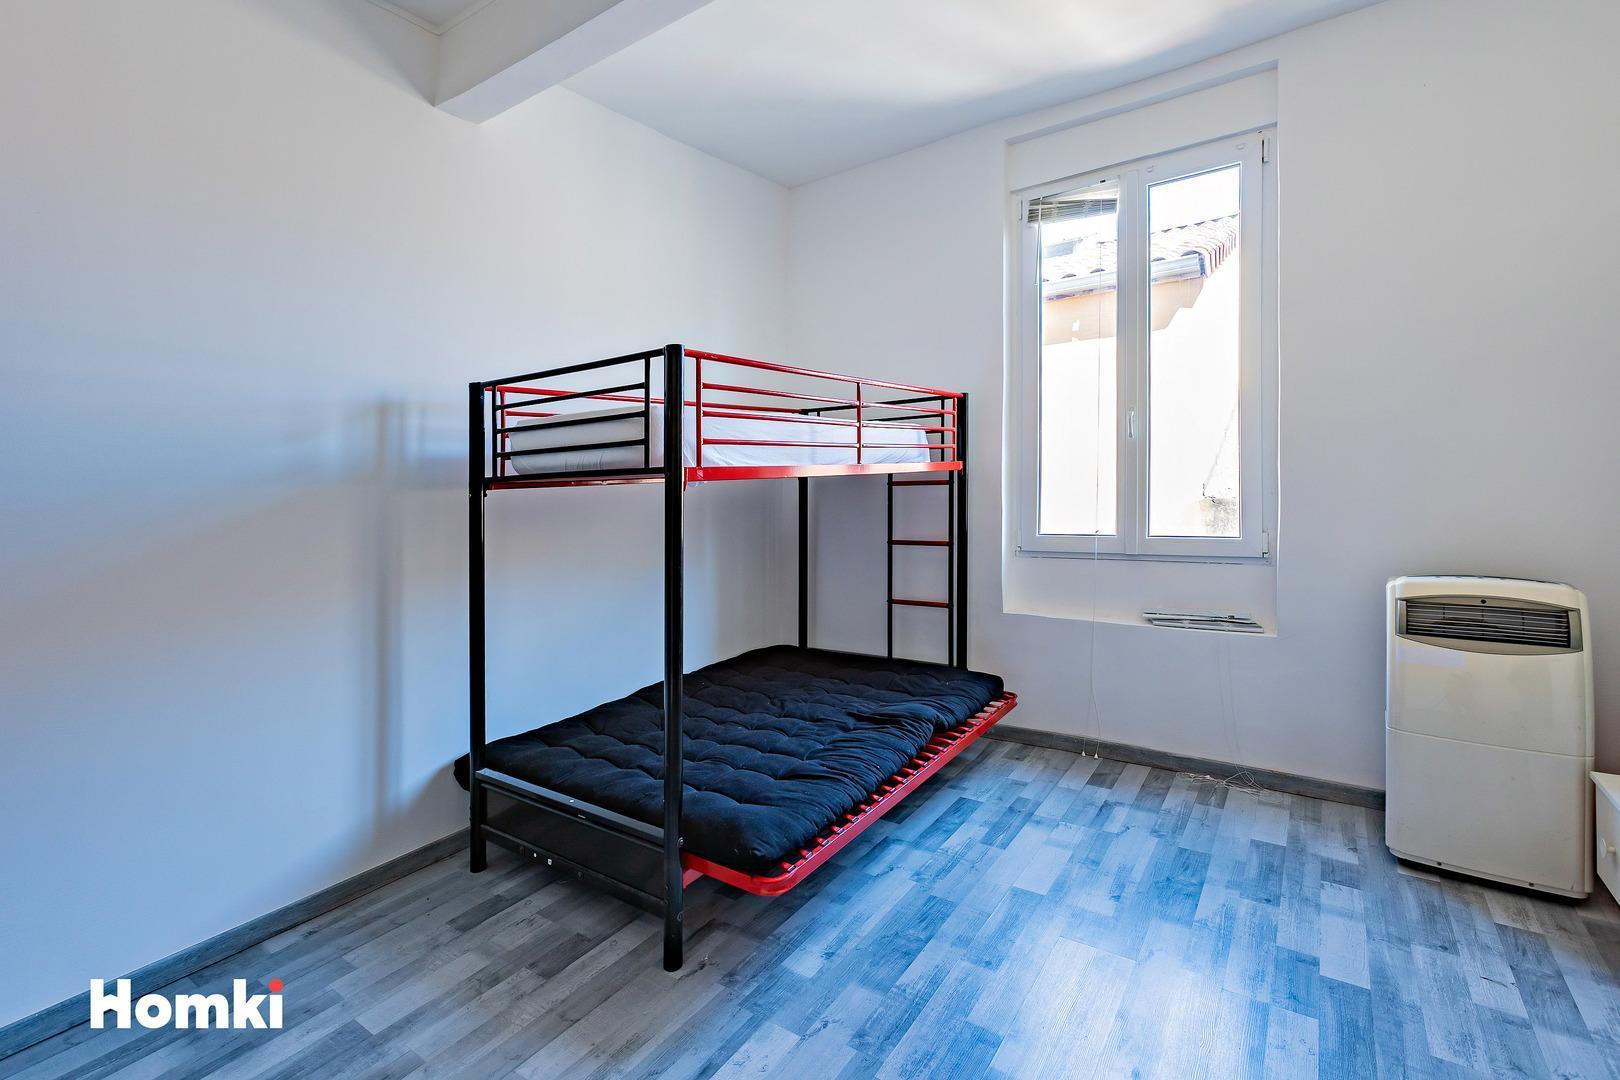 Homki - Vente Appartement  de 70.0 m² à Béziers 34500